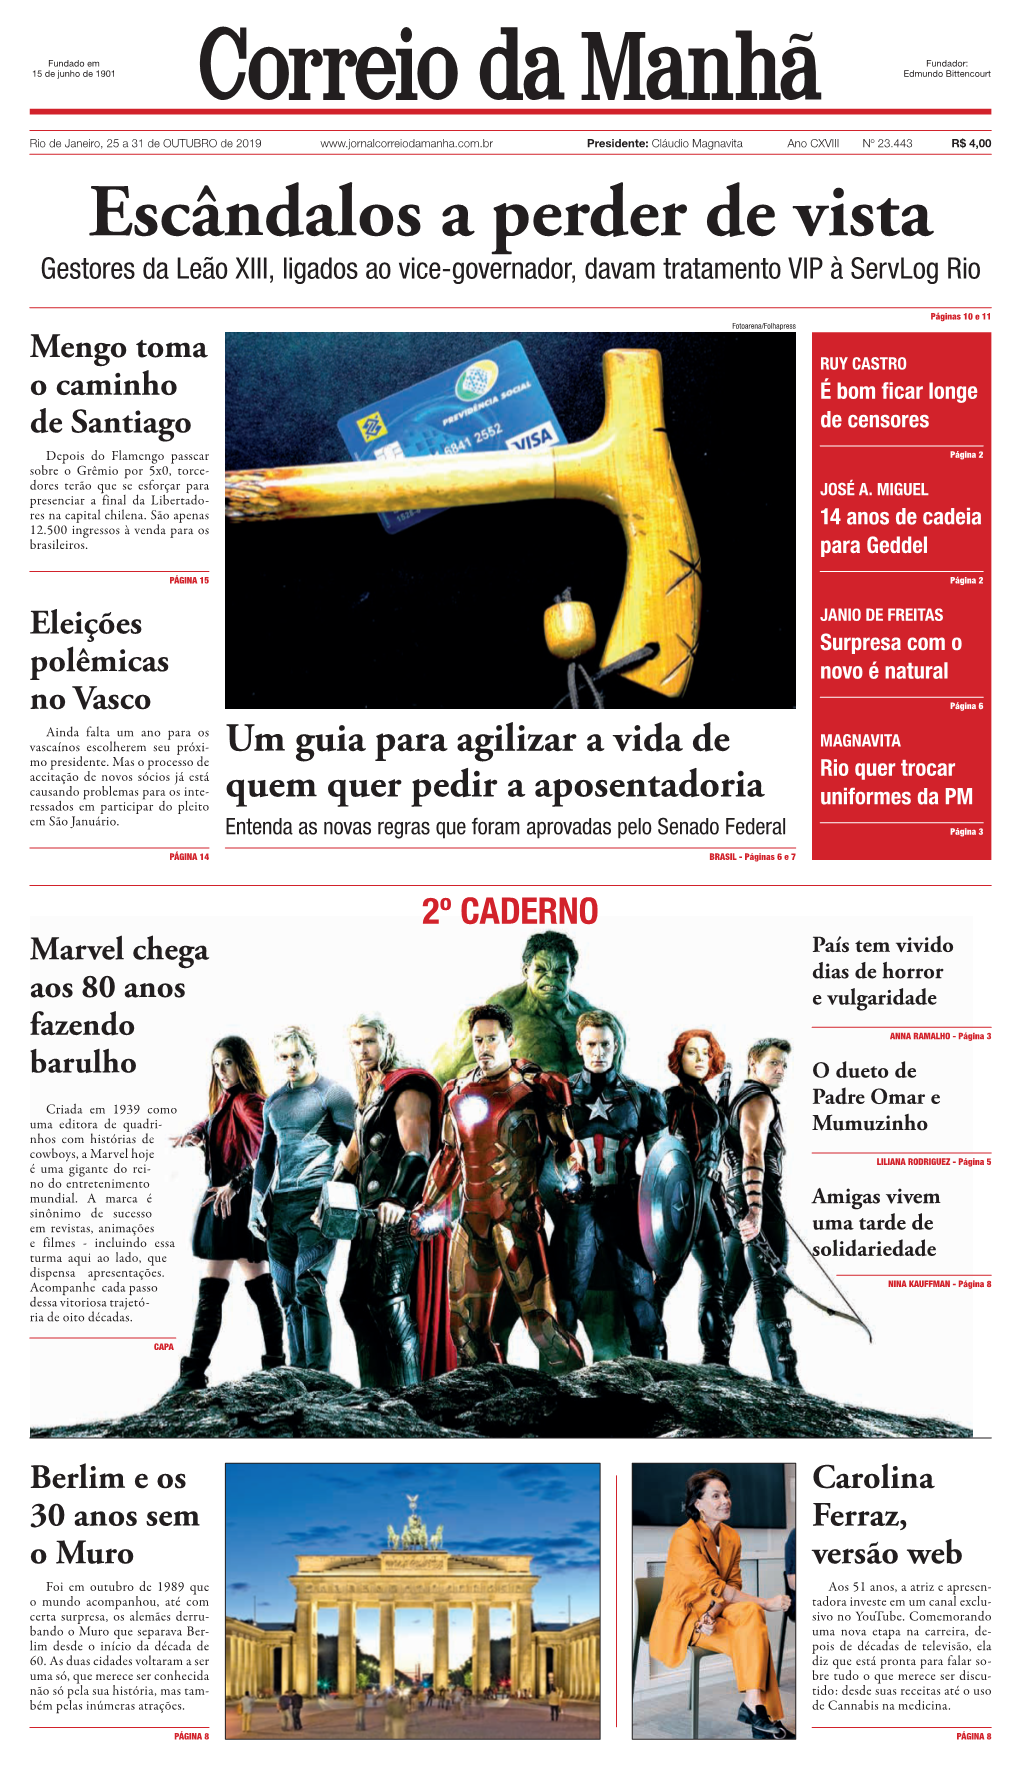 Escândalos a Perder De Vista Gestores Da Leão XIII, Ligados Ao Vice-Governador, Davam Tratamento VIP À Servlog Rio